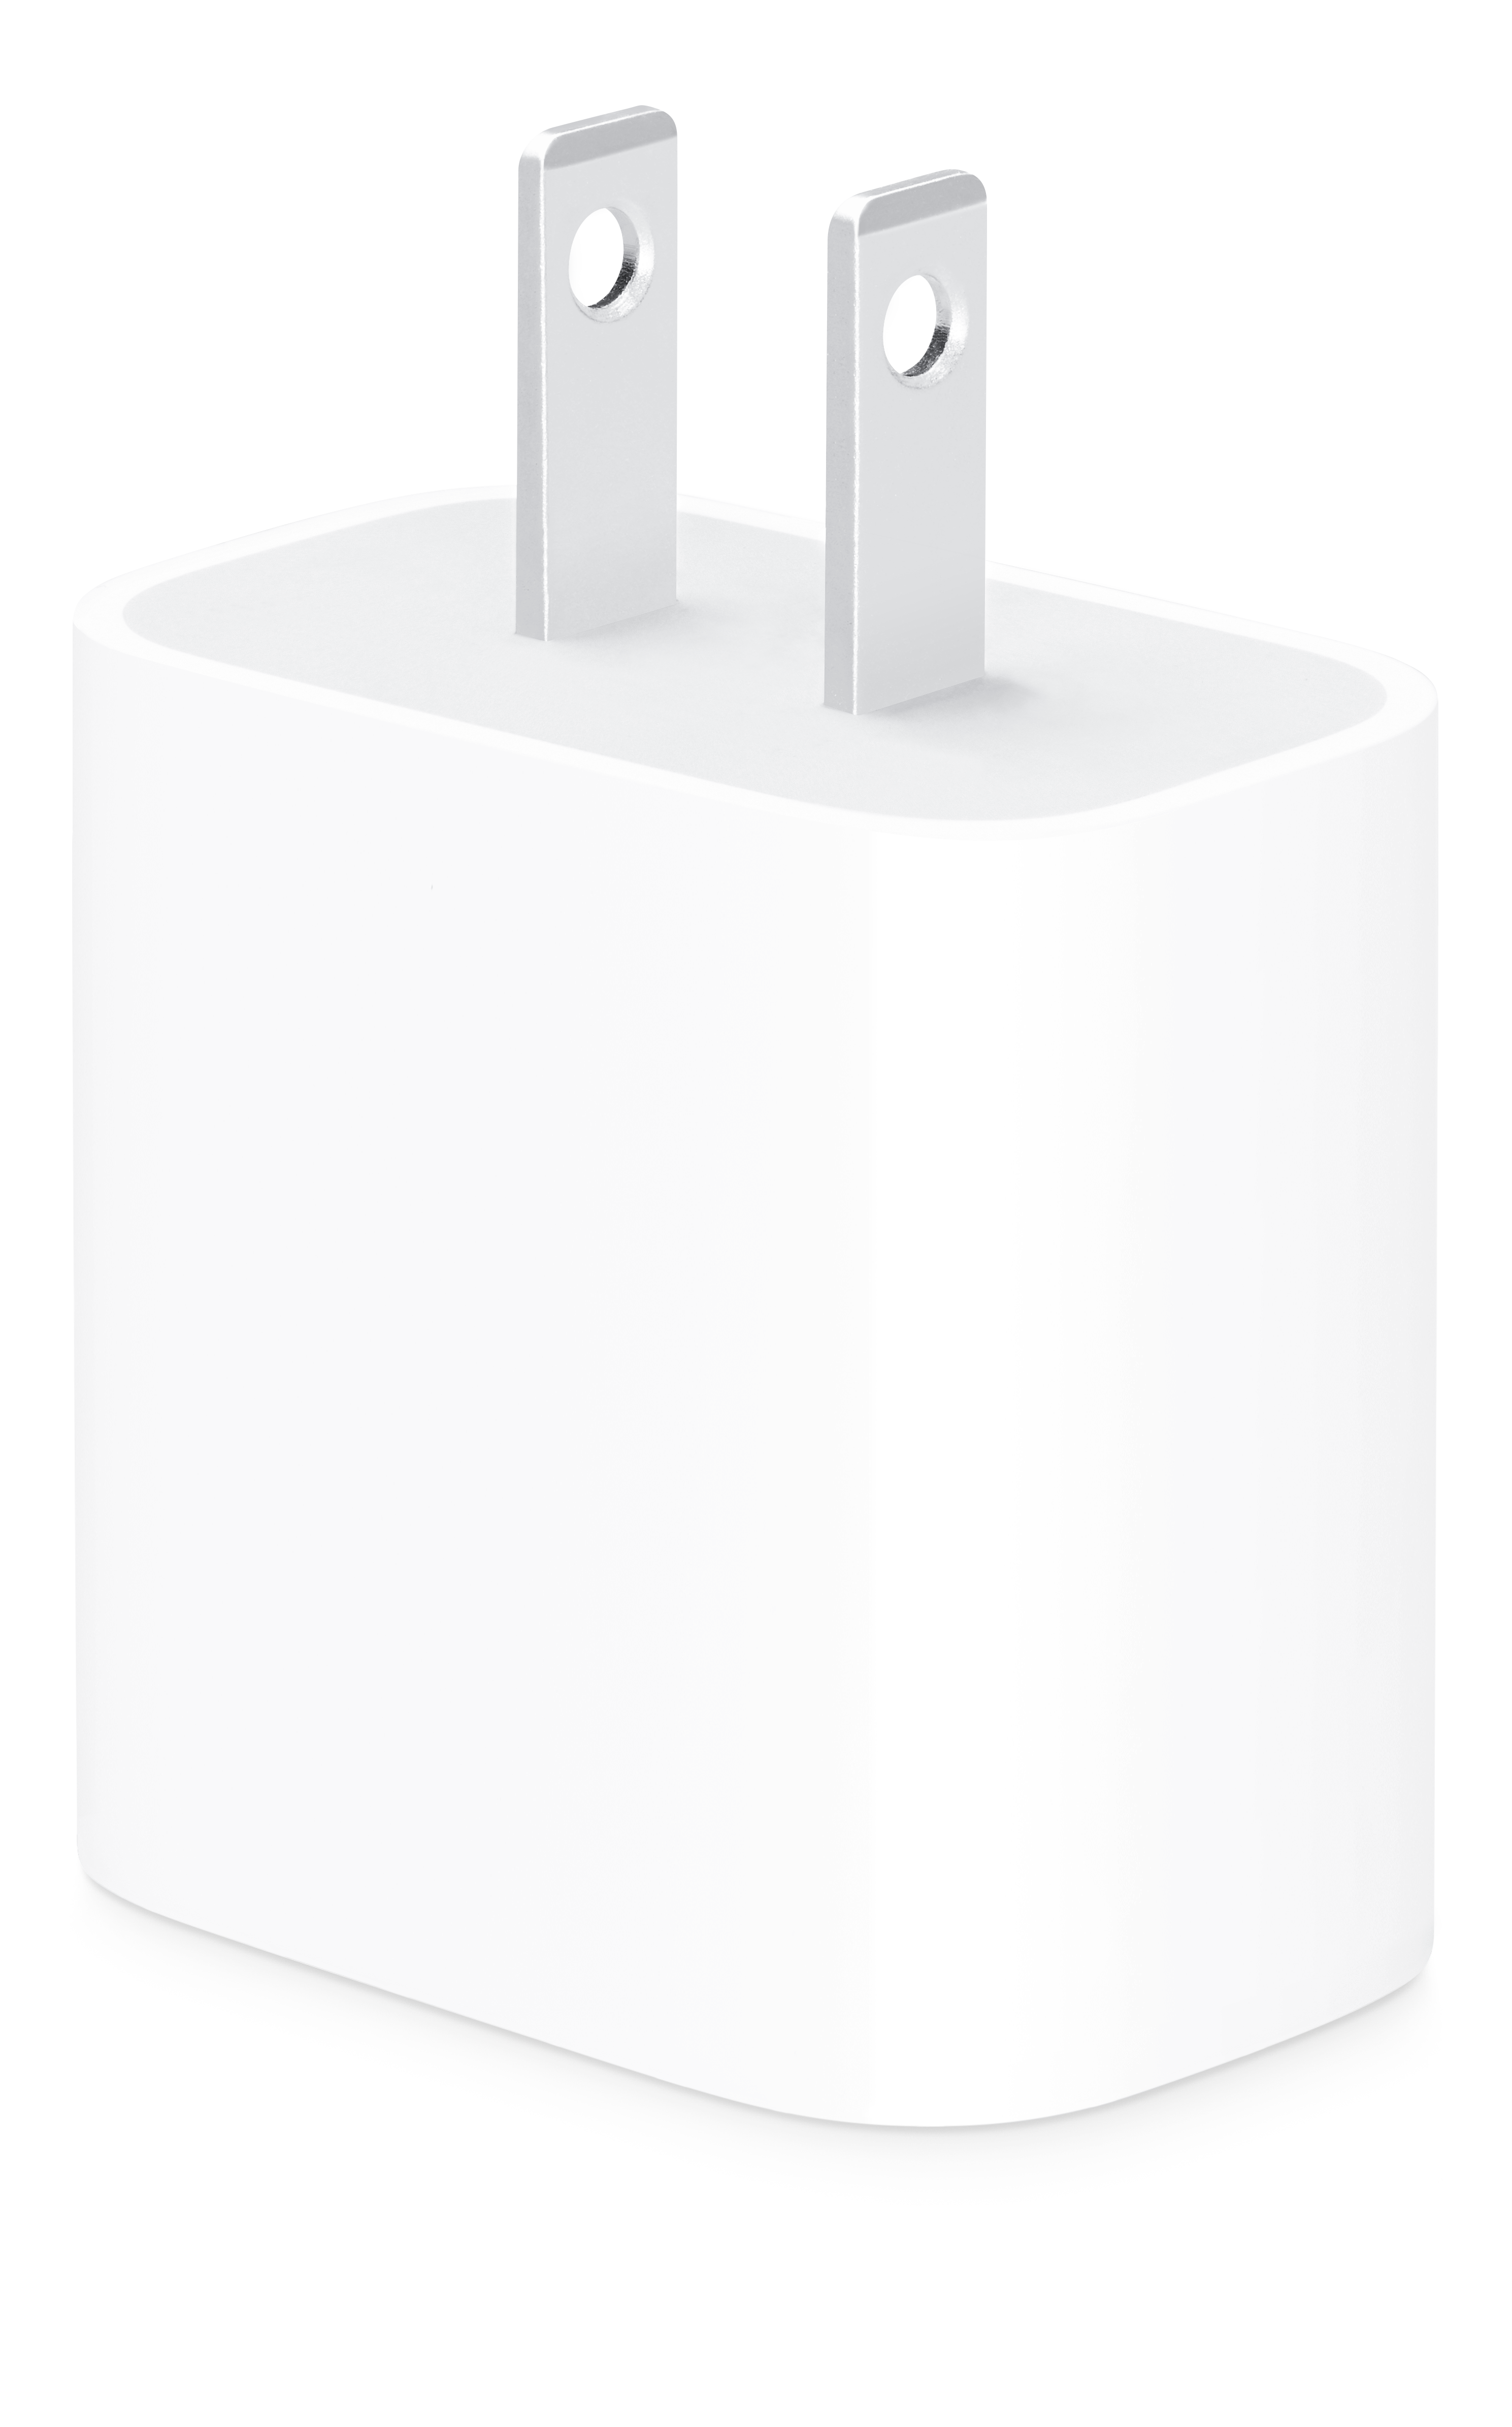 Apple Adaptador cargador de corriente USB-C VERSIÓN 20W